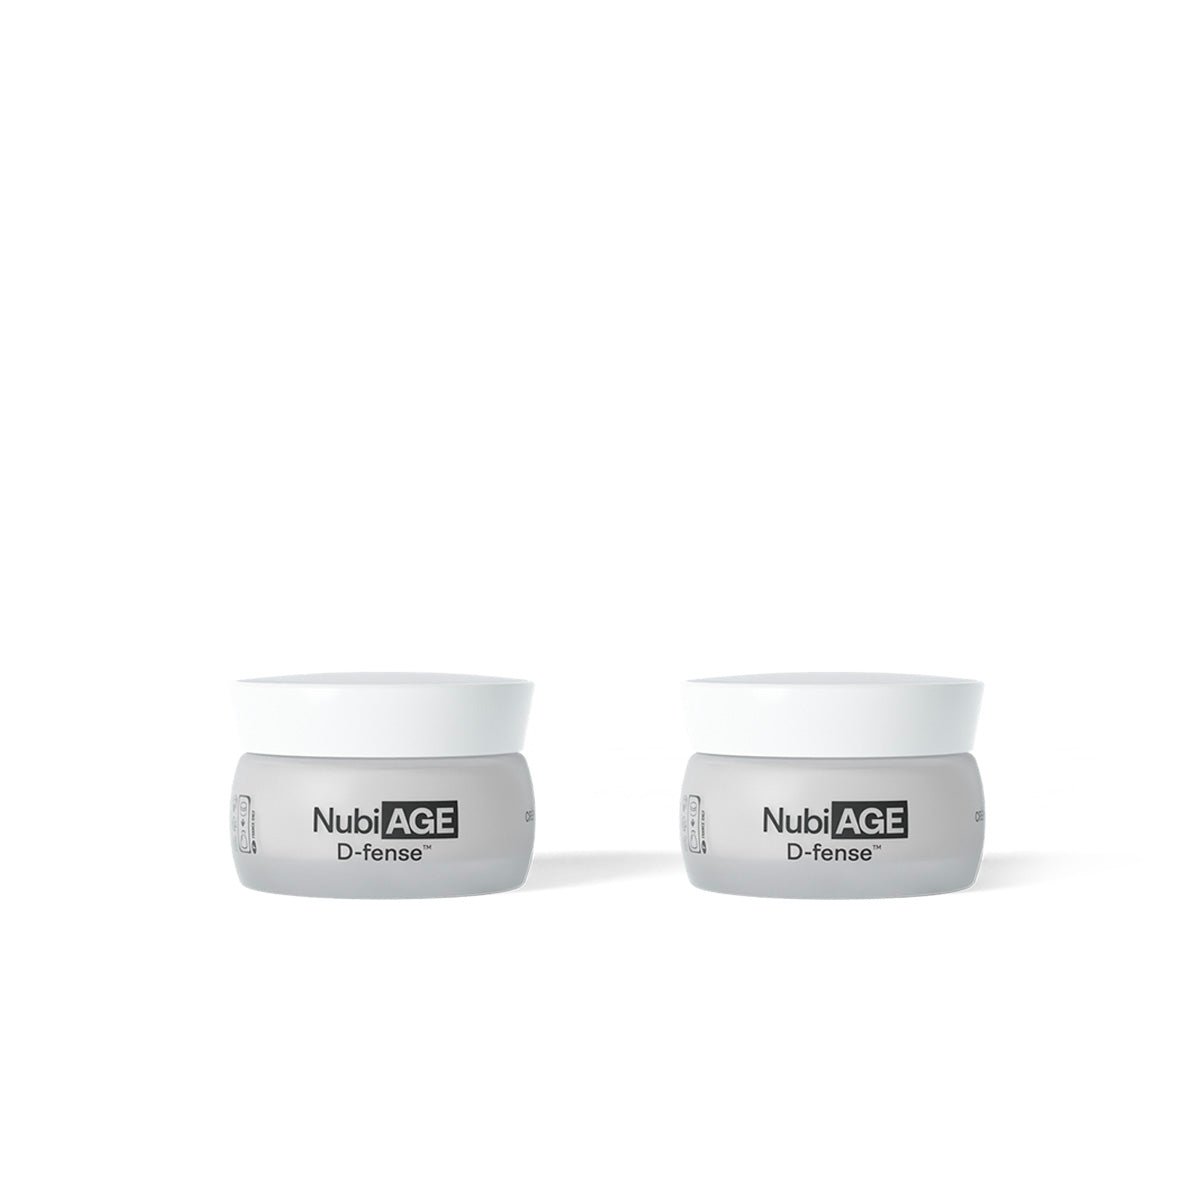 NubiAGE D-fense™ - Crème Antioxydante & Repulpante, 50 ml